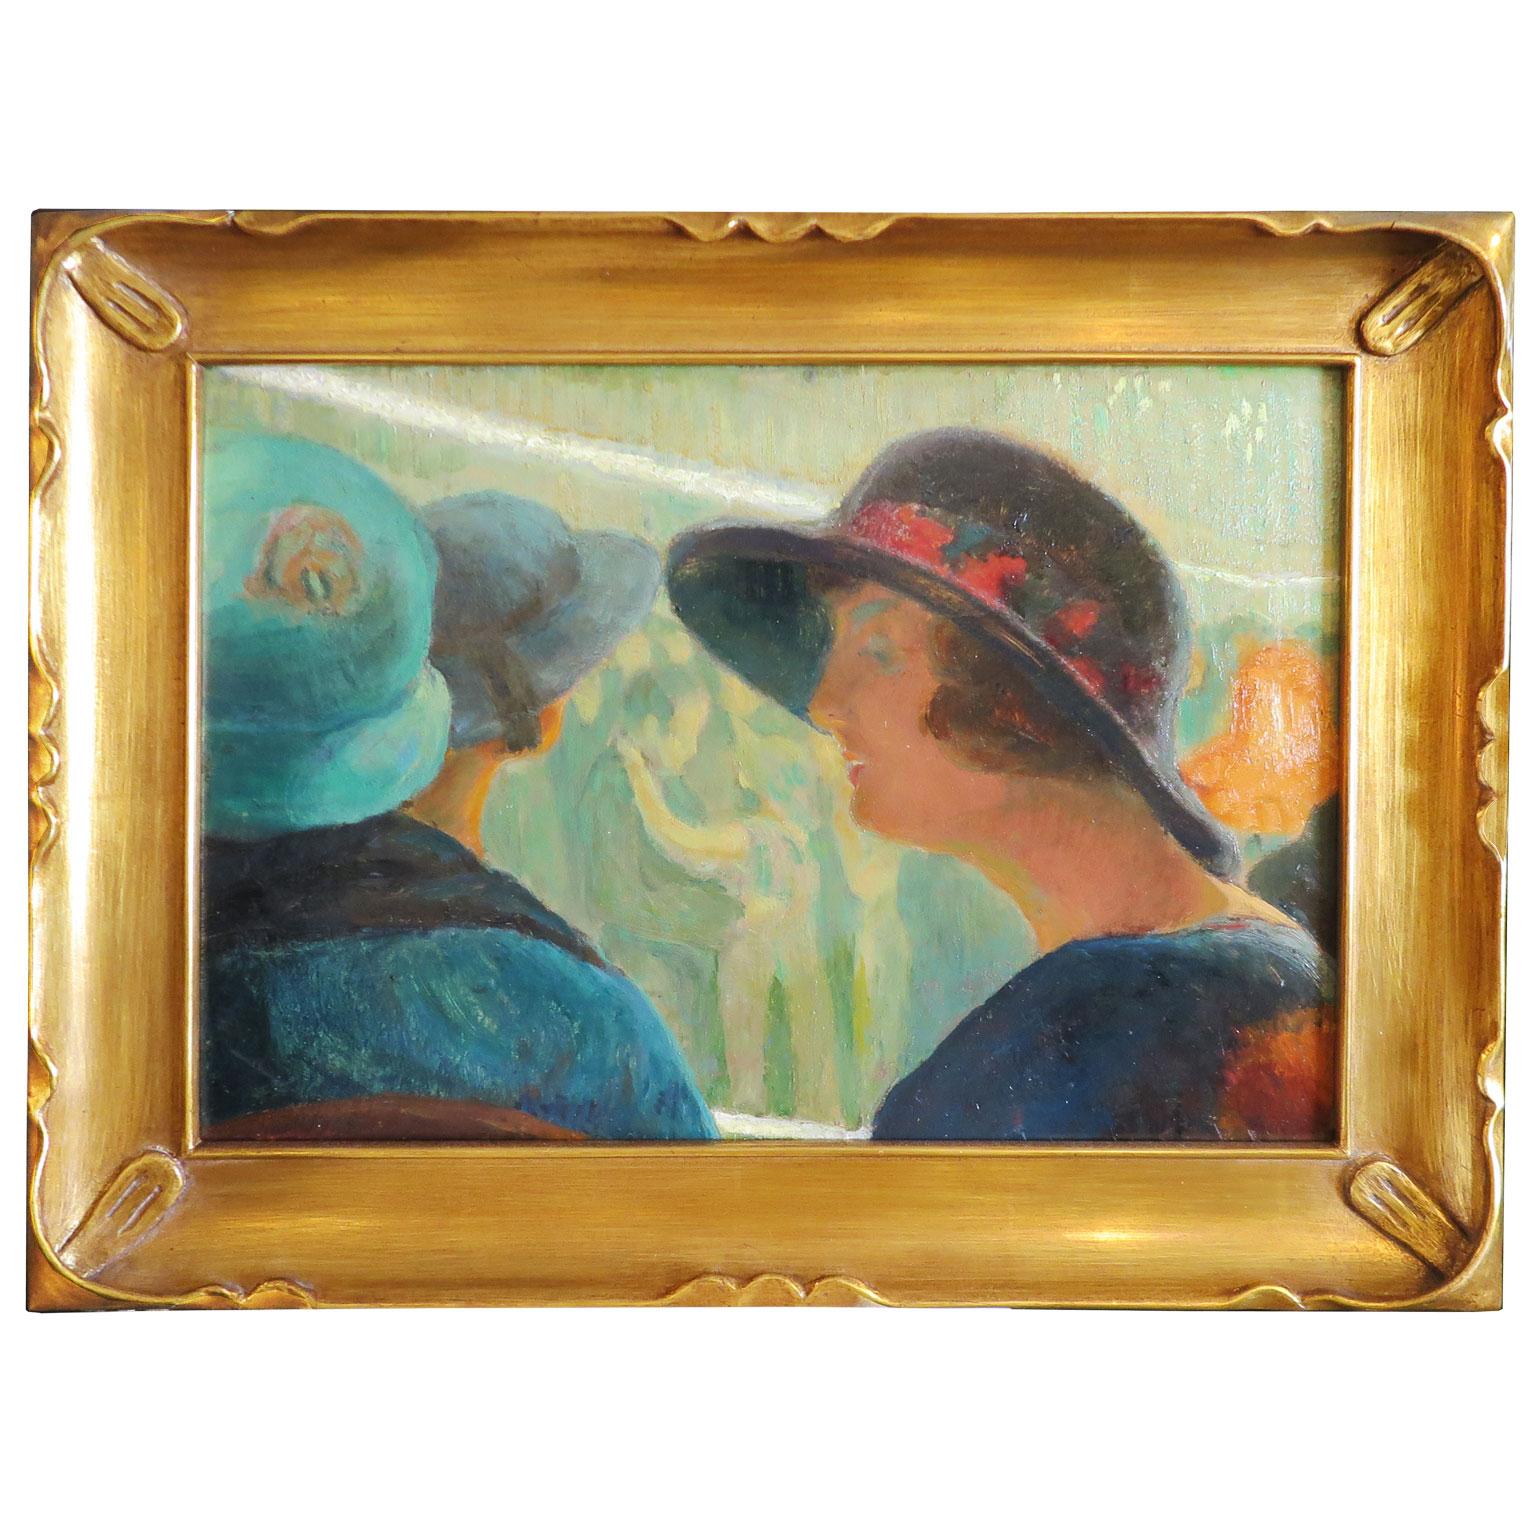 Gemälde von Philip Swyncop aus dem 19. Jahrhundert mit Frauen in ihren Hüten